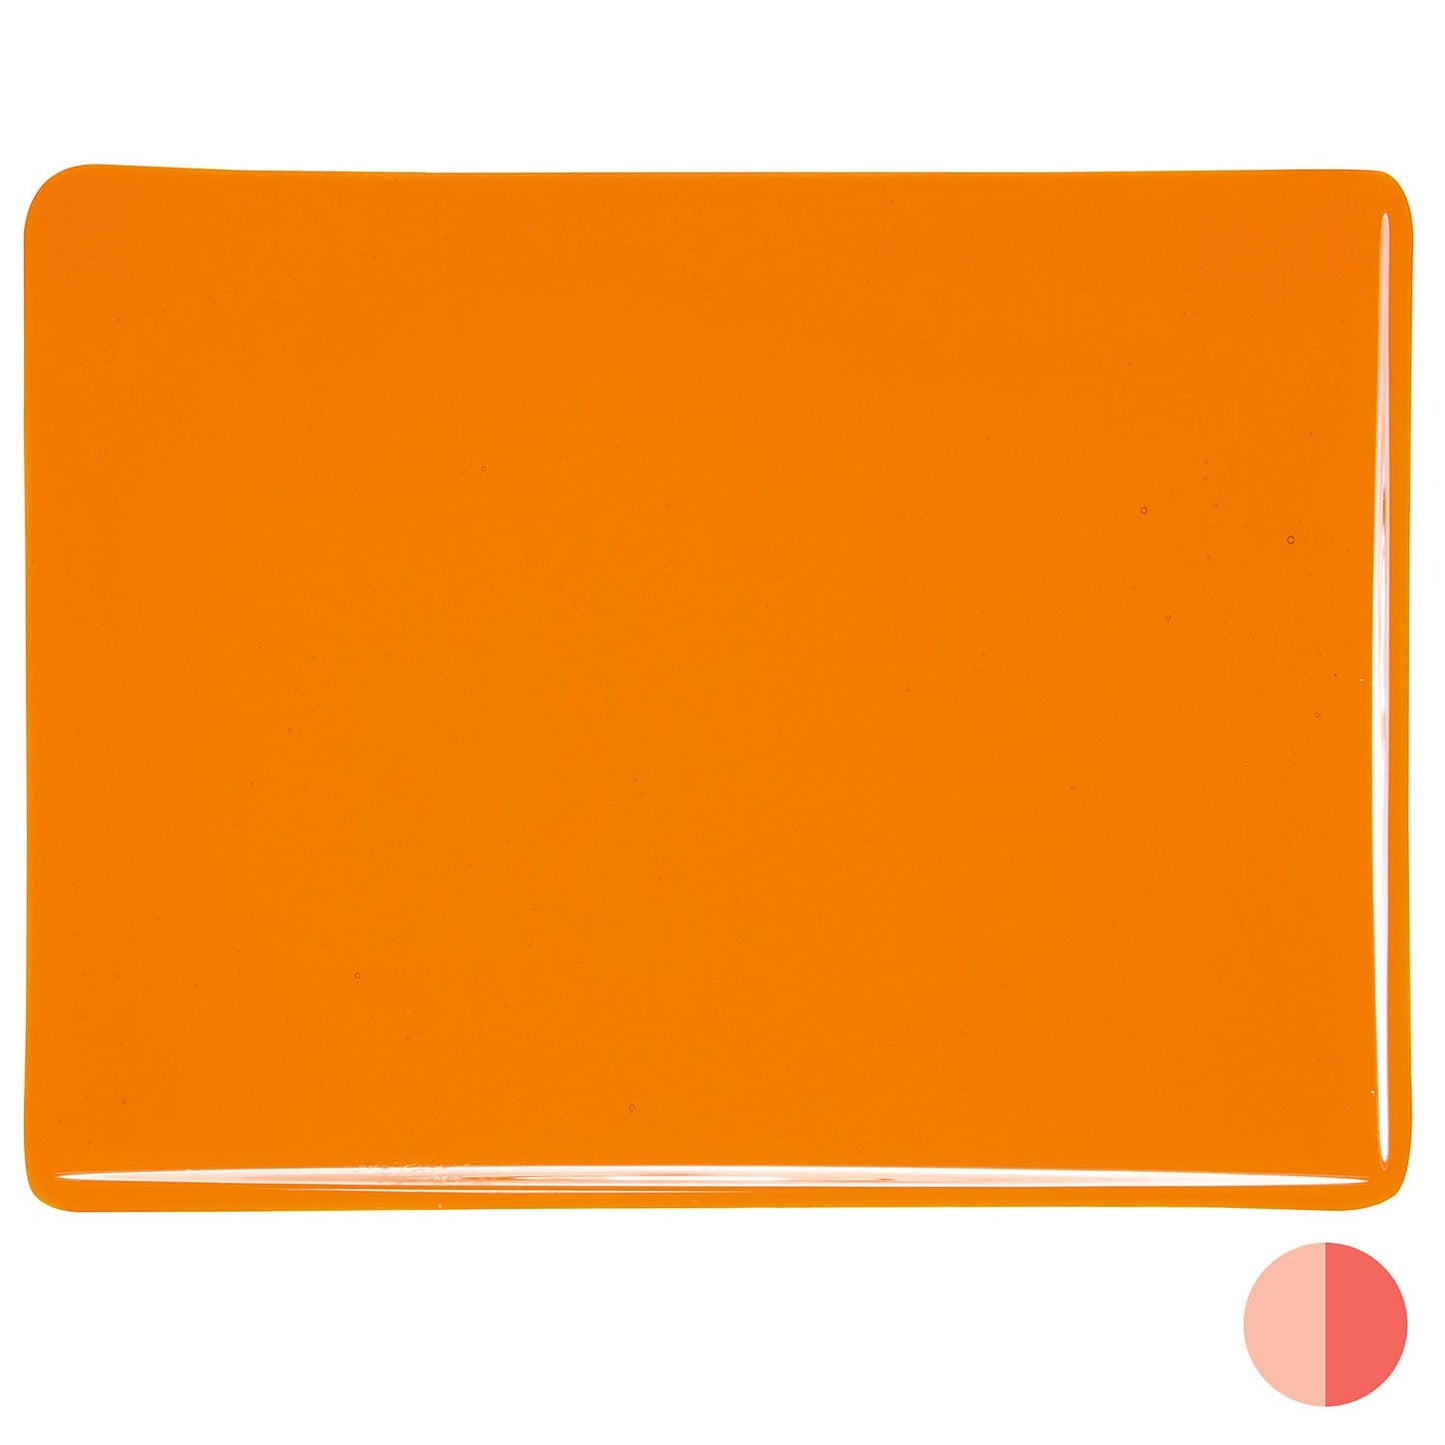 Bullseye COE90 Fusing Glass 001025 Light Orange Handy Sheet